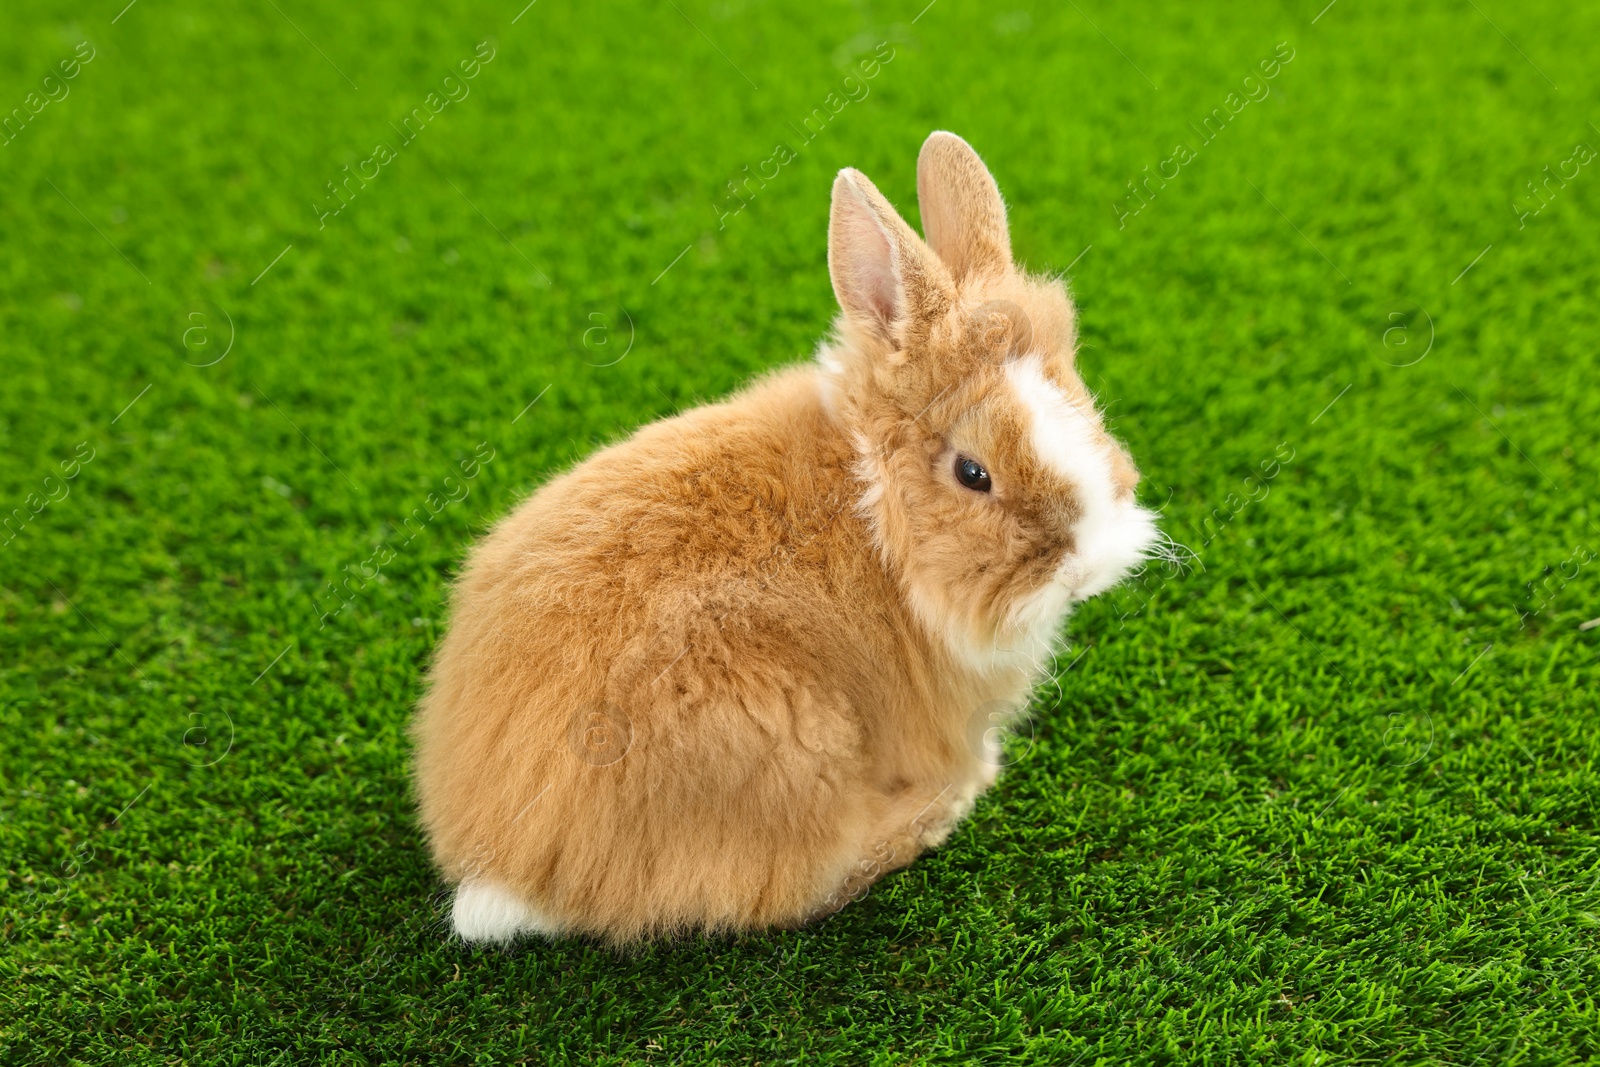 Photo of Cute fluffy pet rabbit on green grass